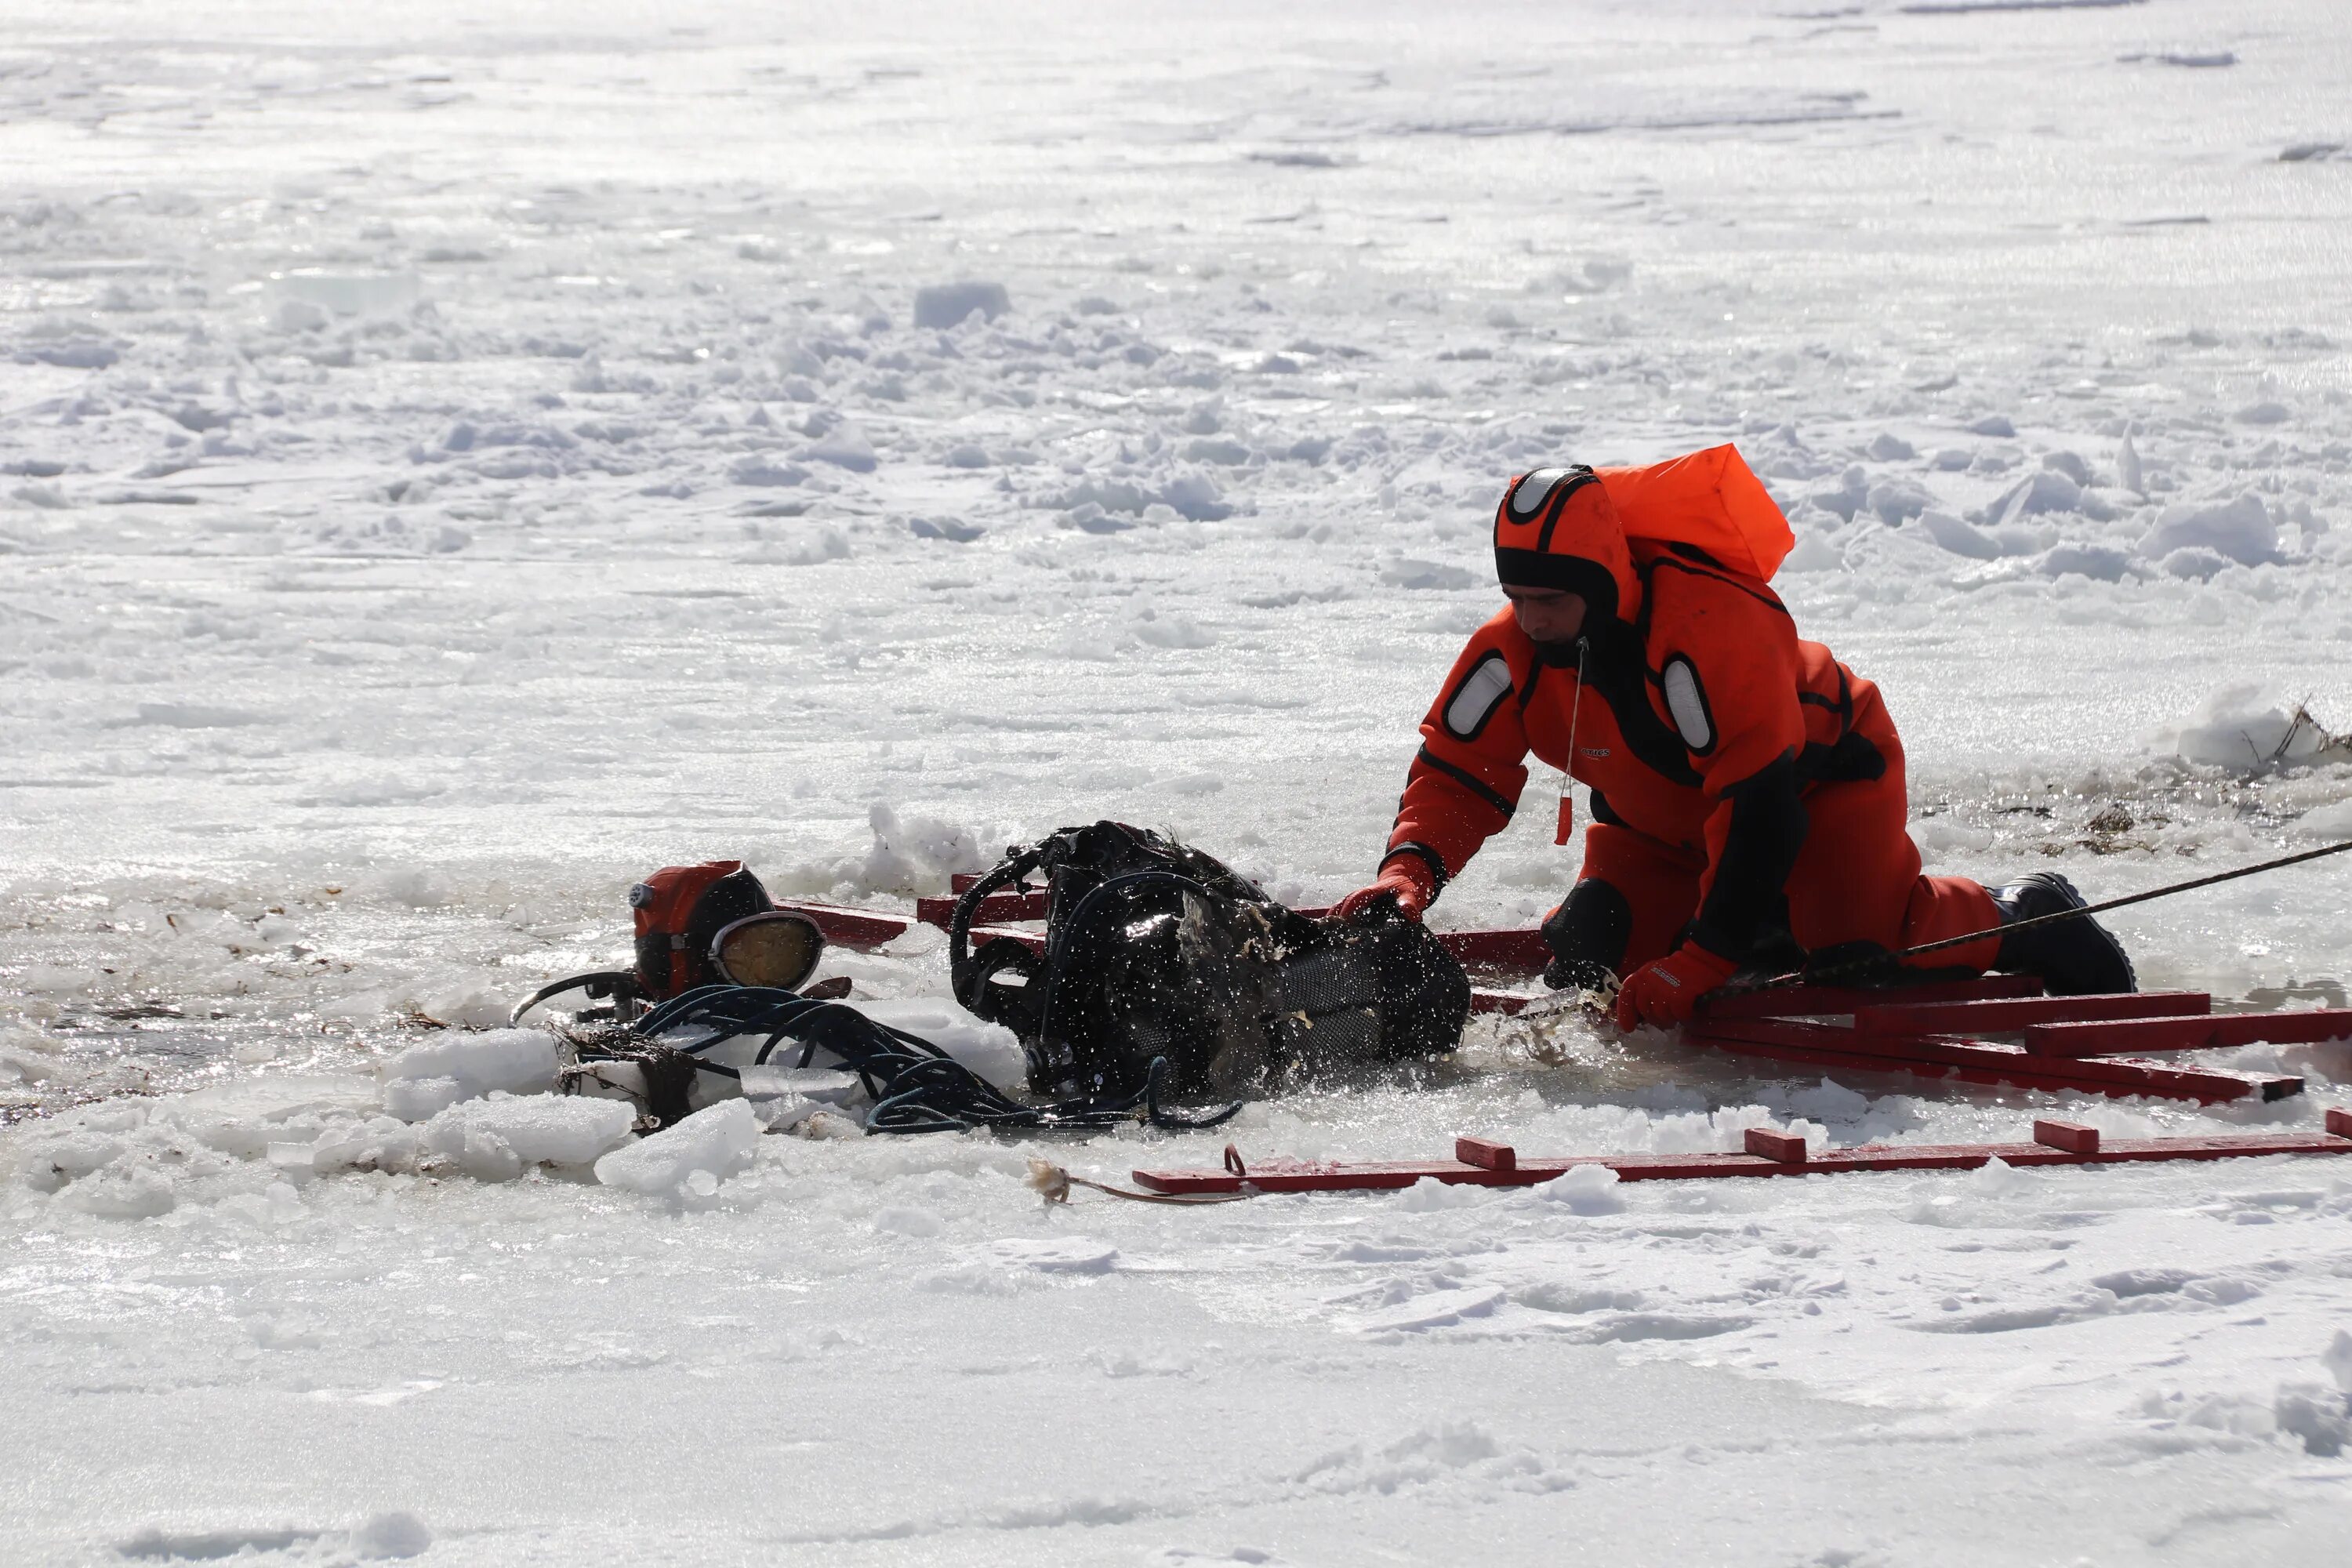 Спасение человека провалившегося под лед. Спасение провалившегося под лед. Сани спасателей для спасения на льду. Человек провалился под лед. Спасают человека, провалившегося под лед.